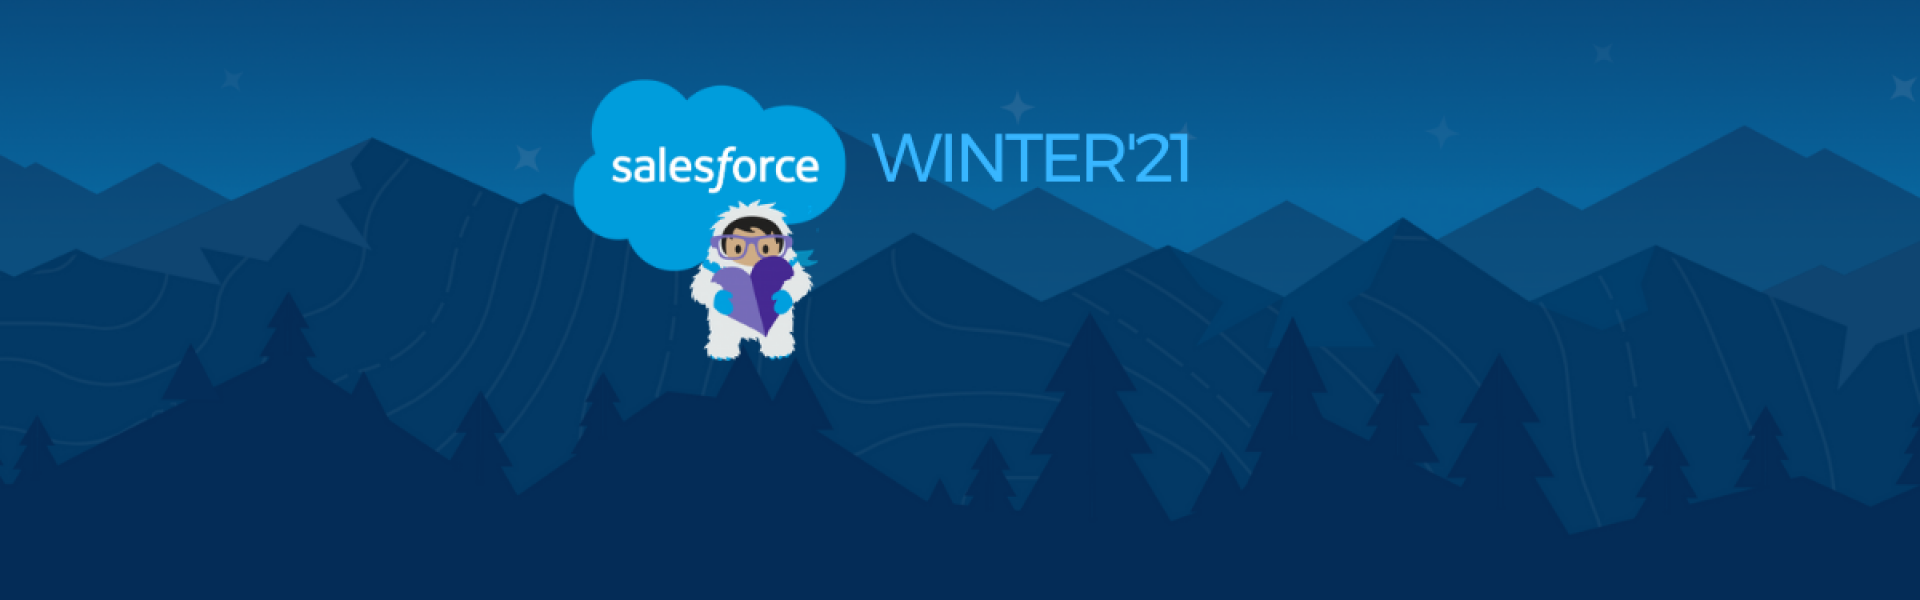 Salesforce winter'21